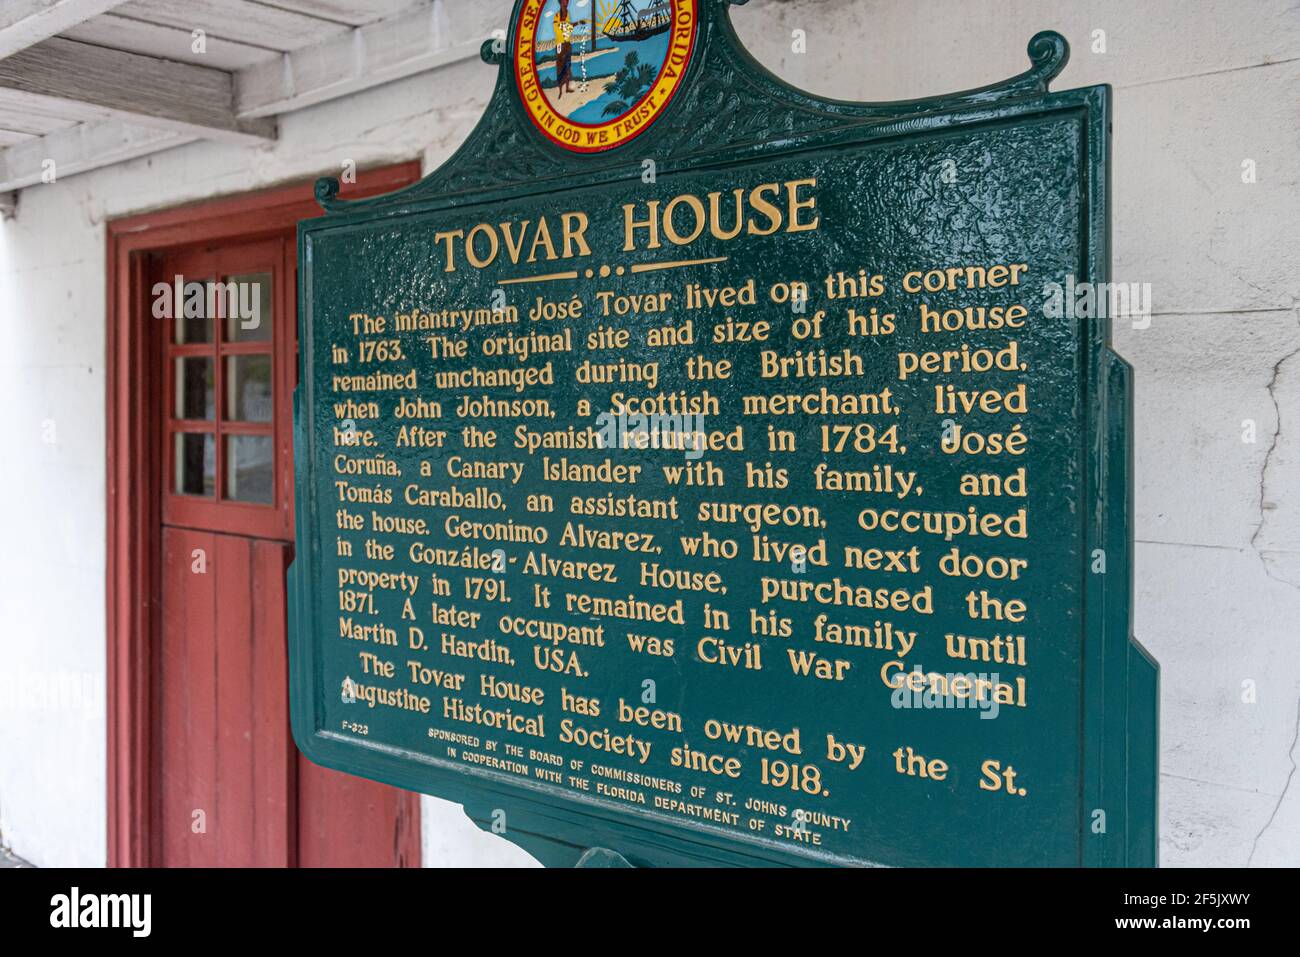 La storica Tovar House, costruita all'inizio del 1700, nella città vecchia di St. Augustine, Florida. (USA)Tovar House esterno Foto Stock